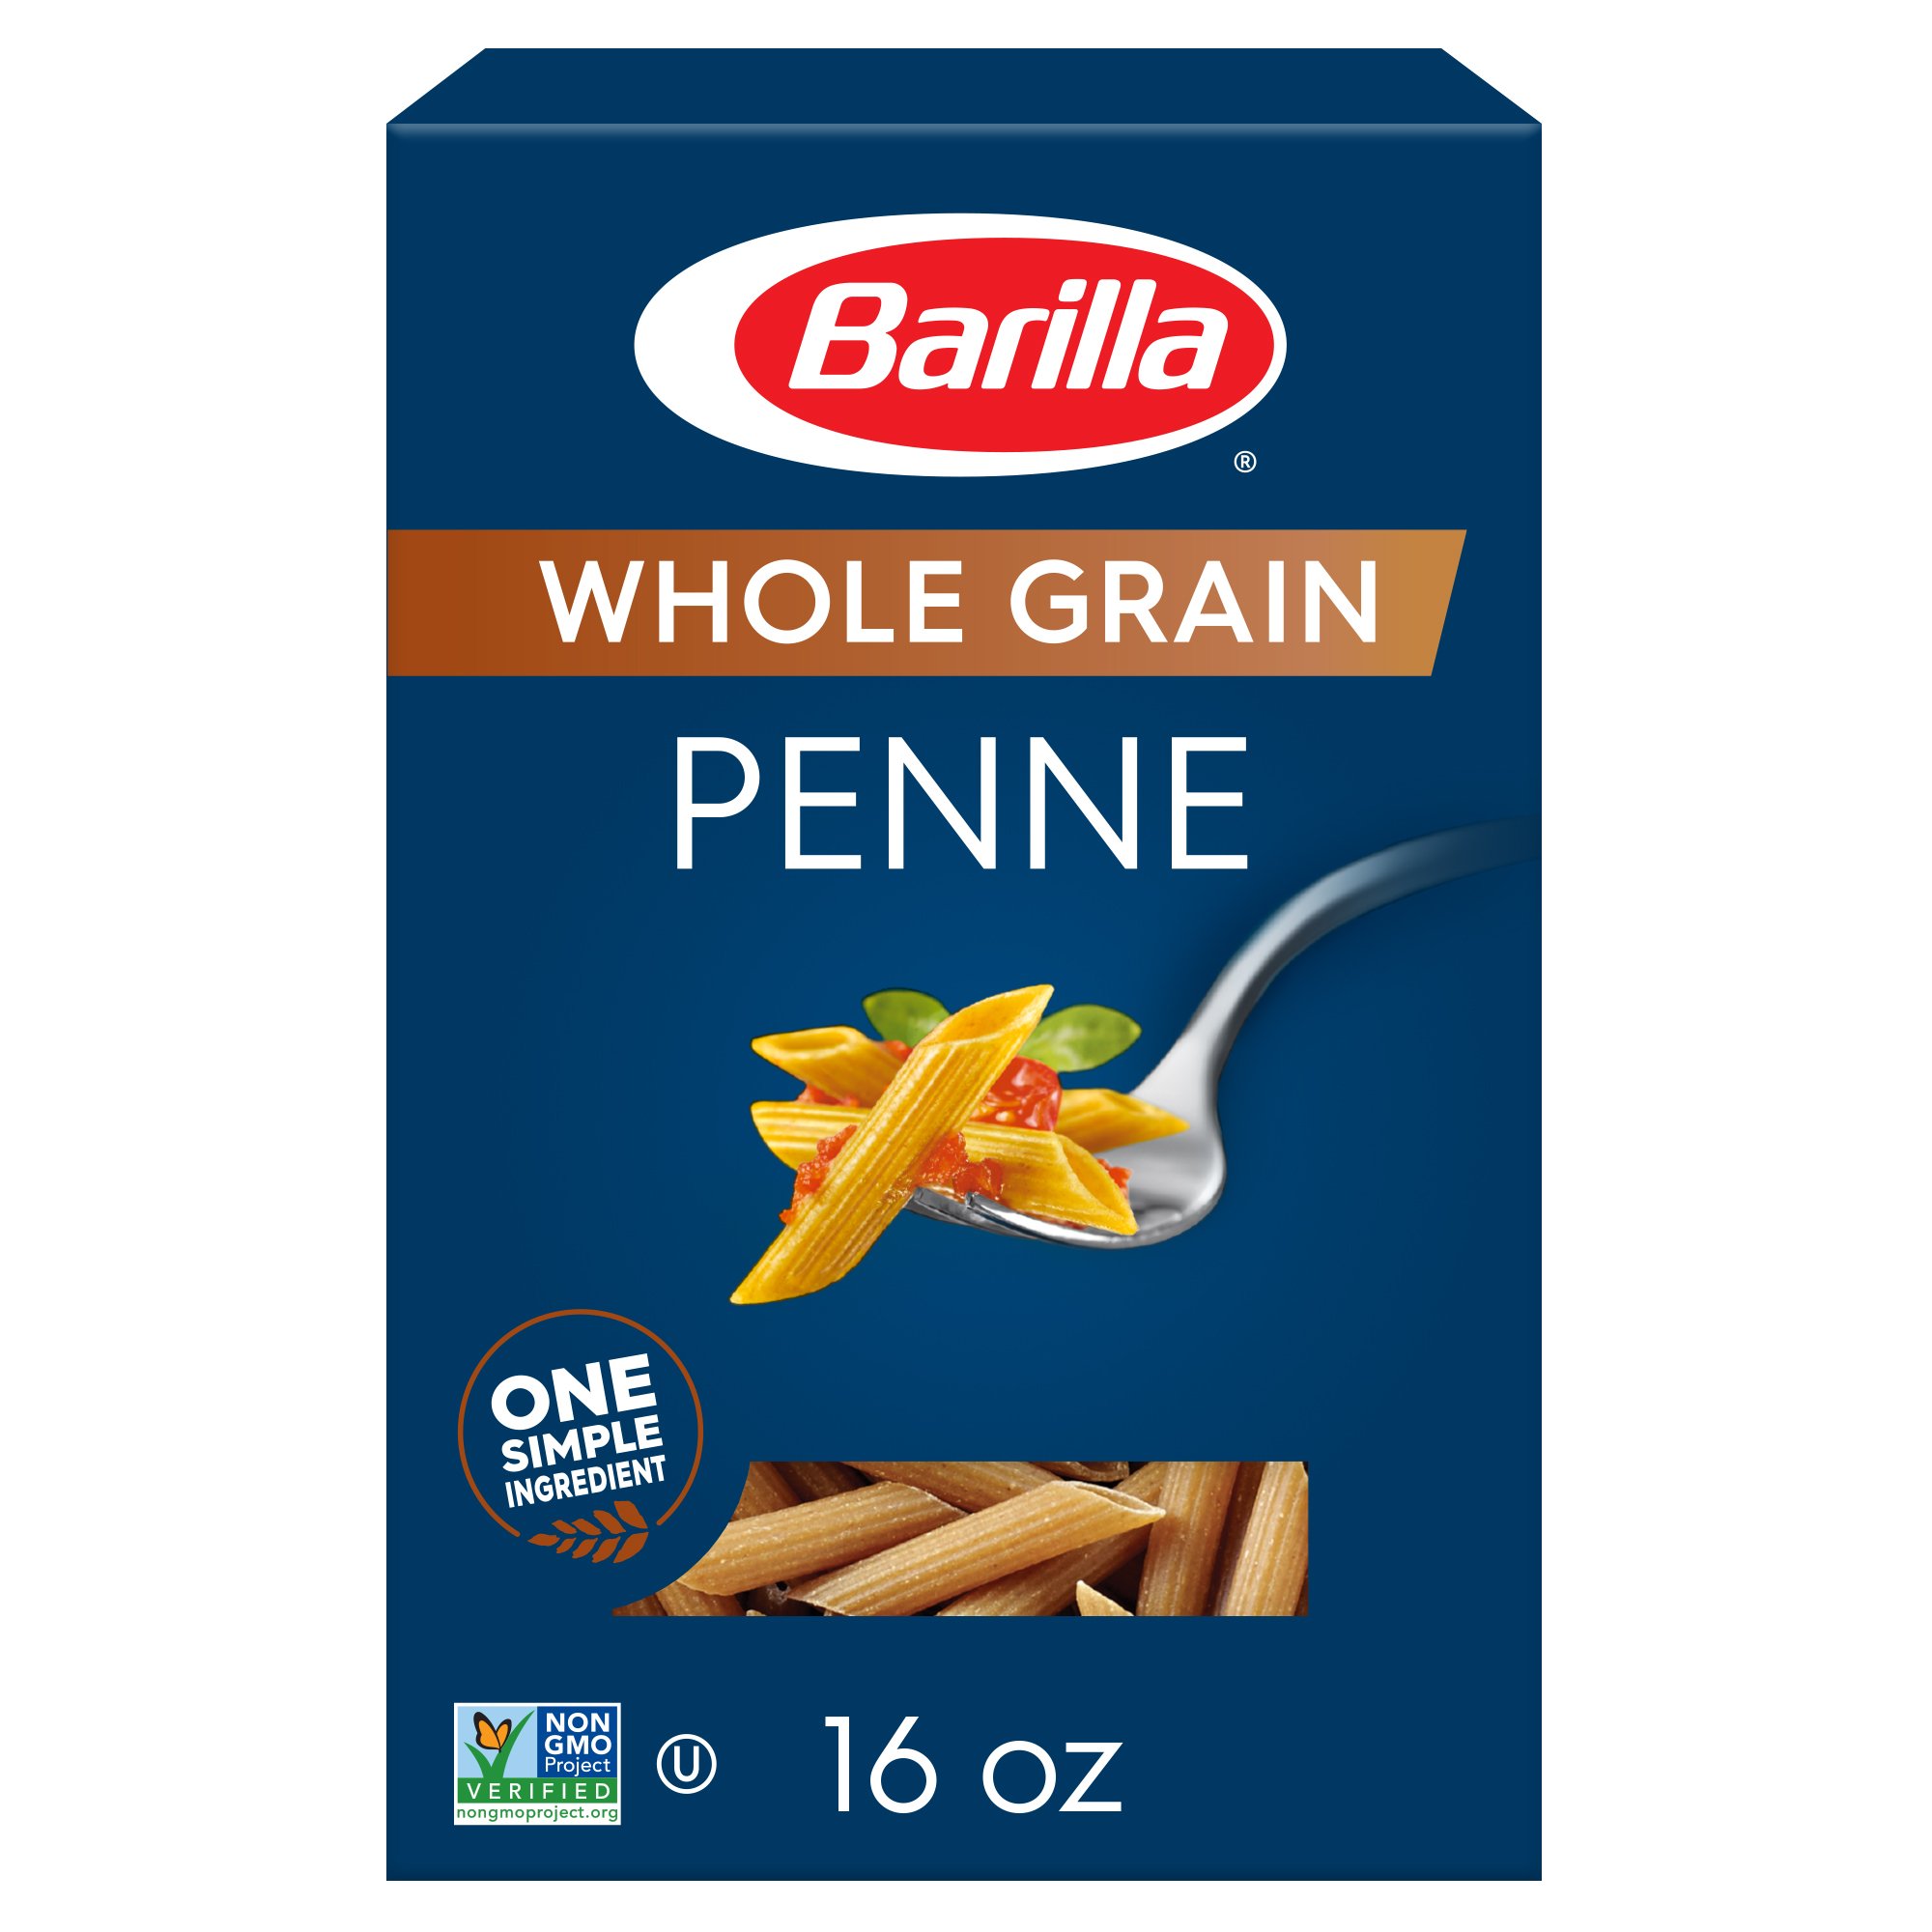 Barilla Whole Grain Penne - Shop Pasta at H-E-B